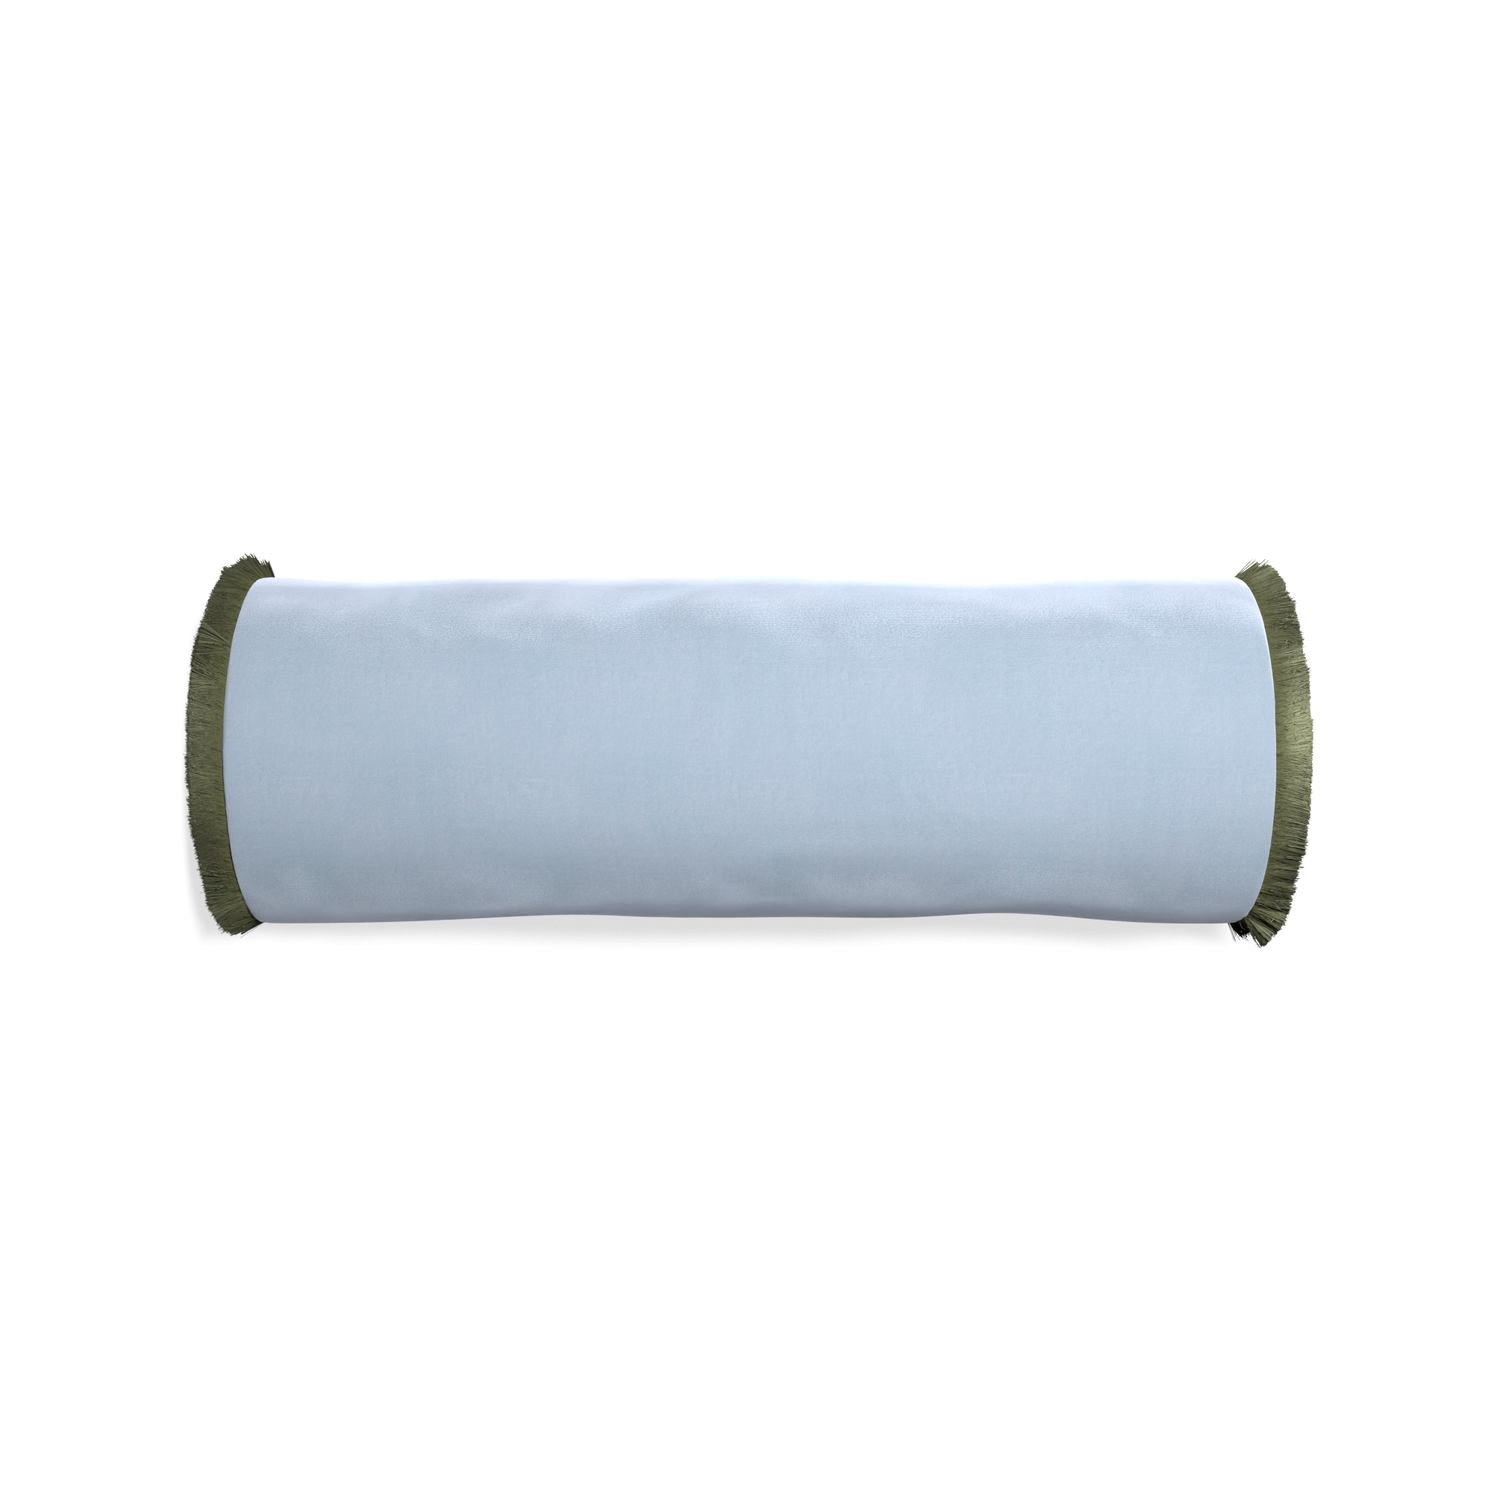 Bolster sky velvet custom pillow with sage fringe on white background